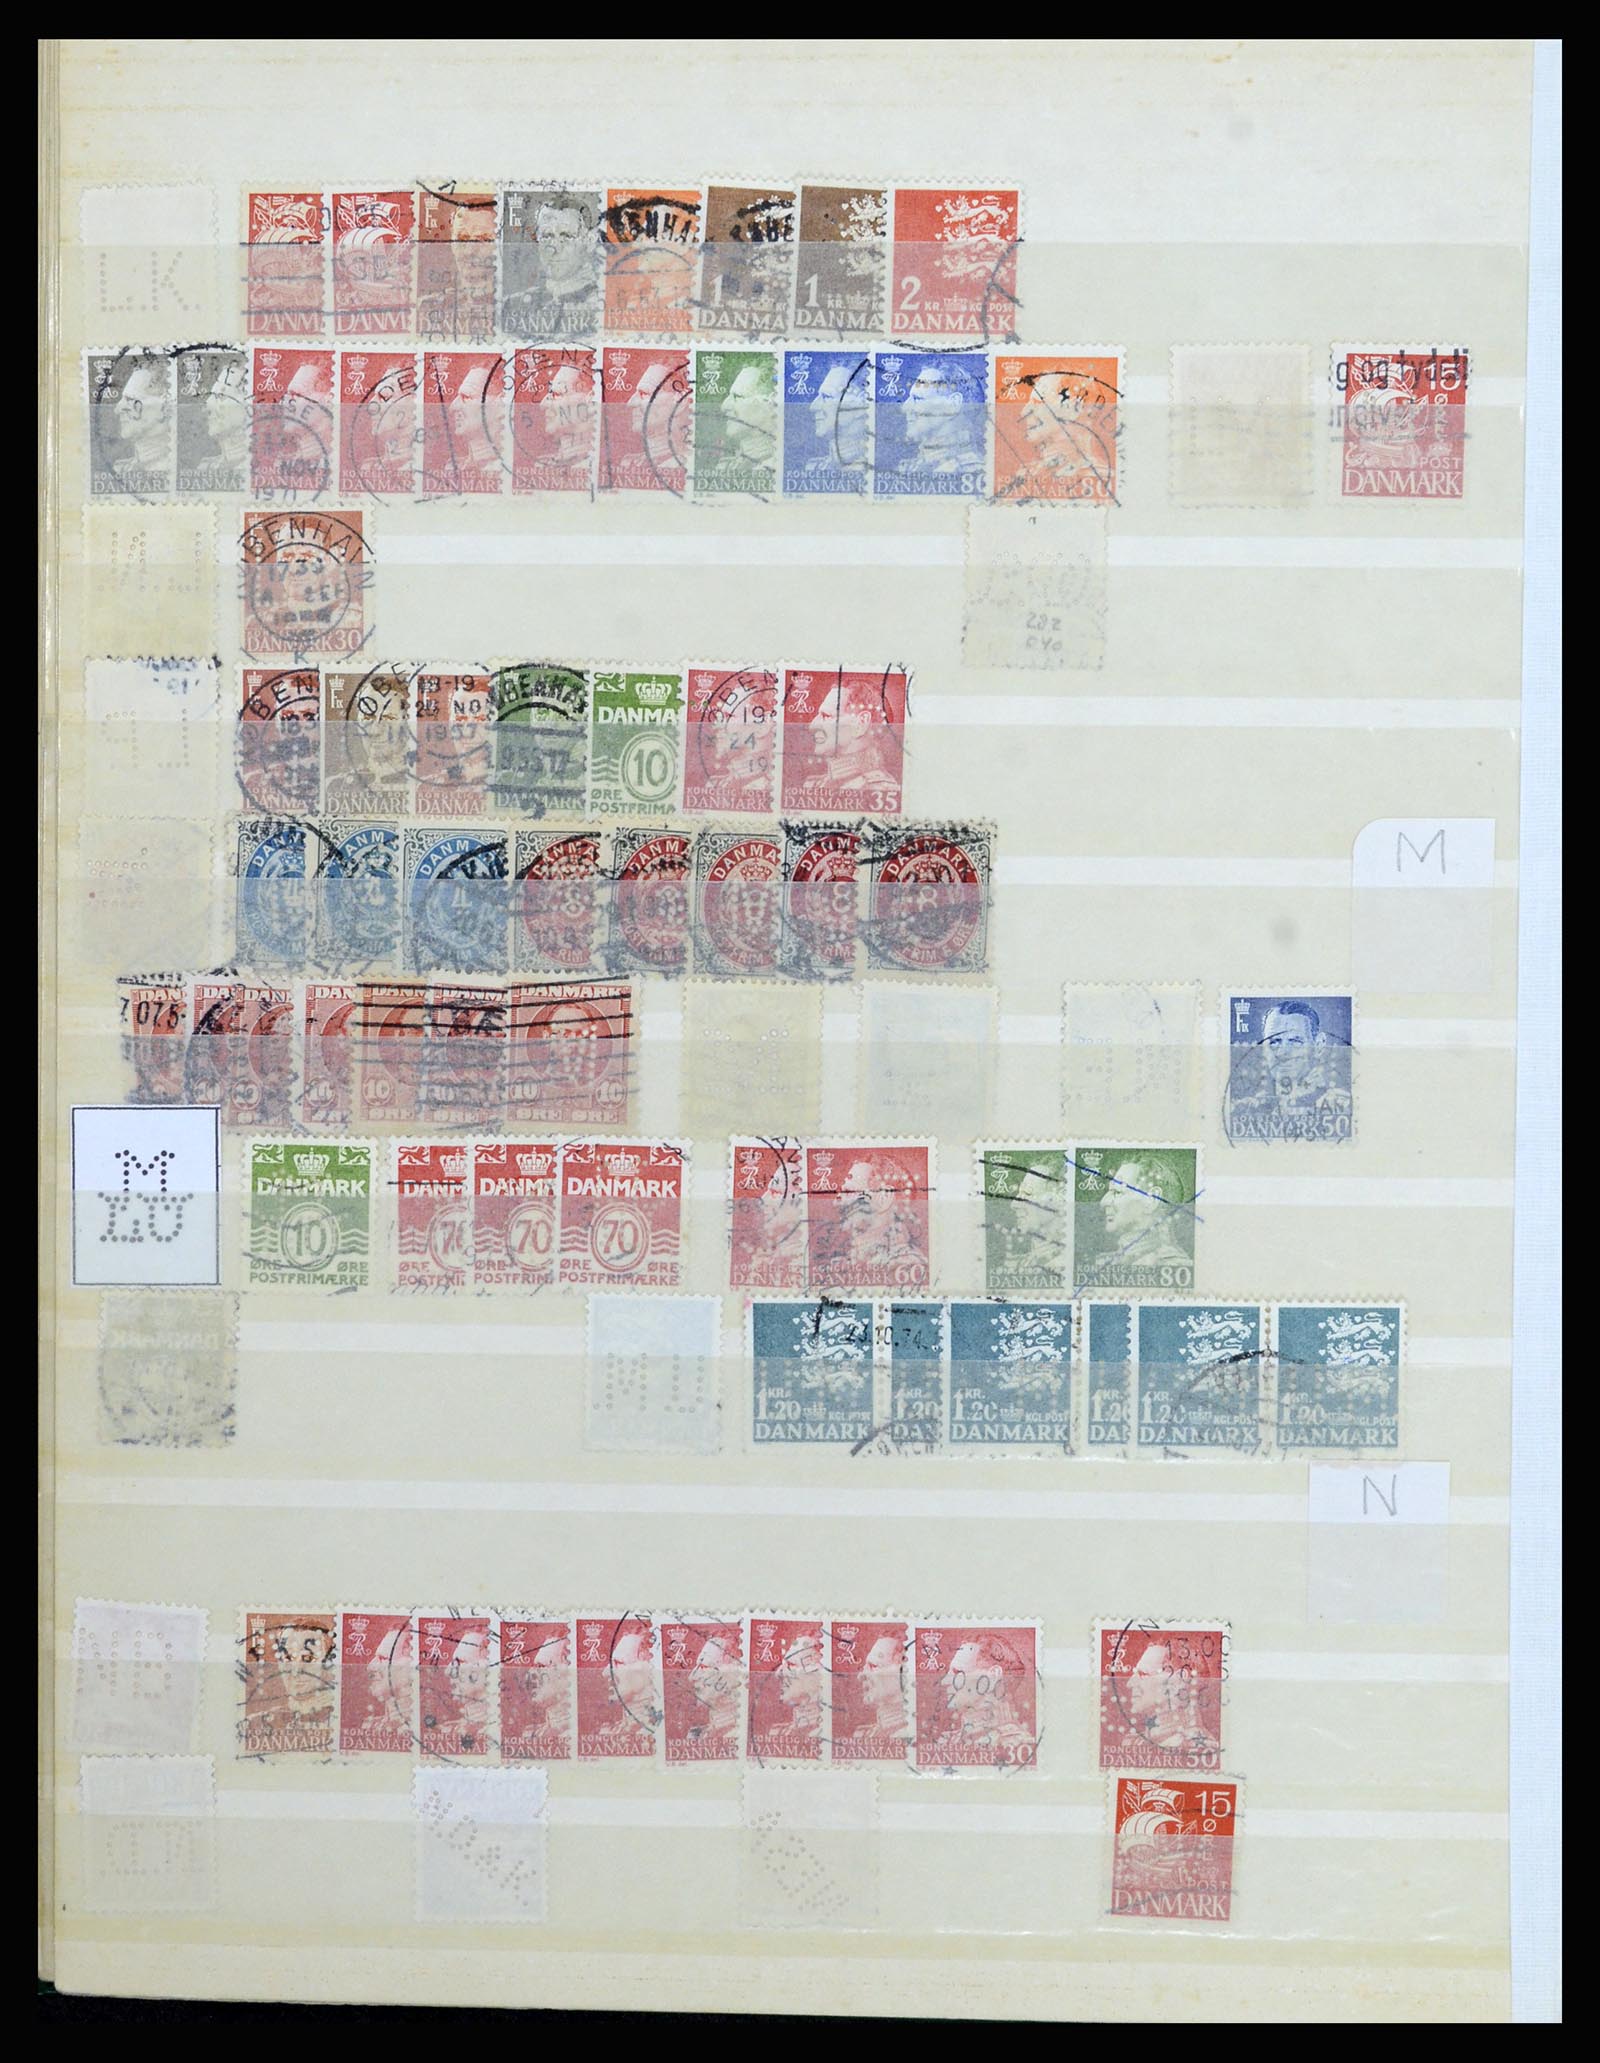 37056 084 - Postzegelverzameling 37056 Denemarken perfins.